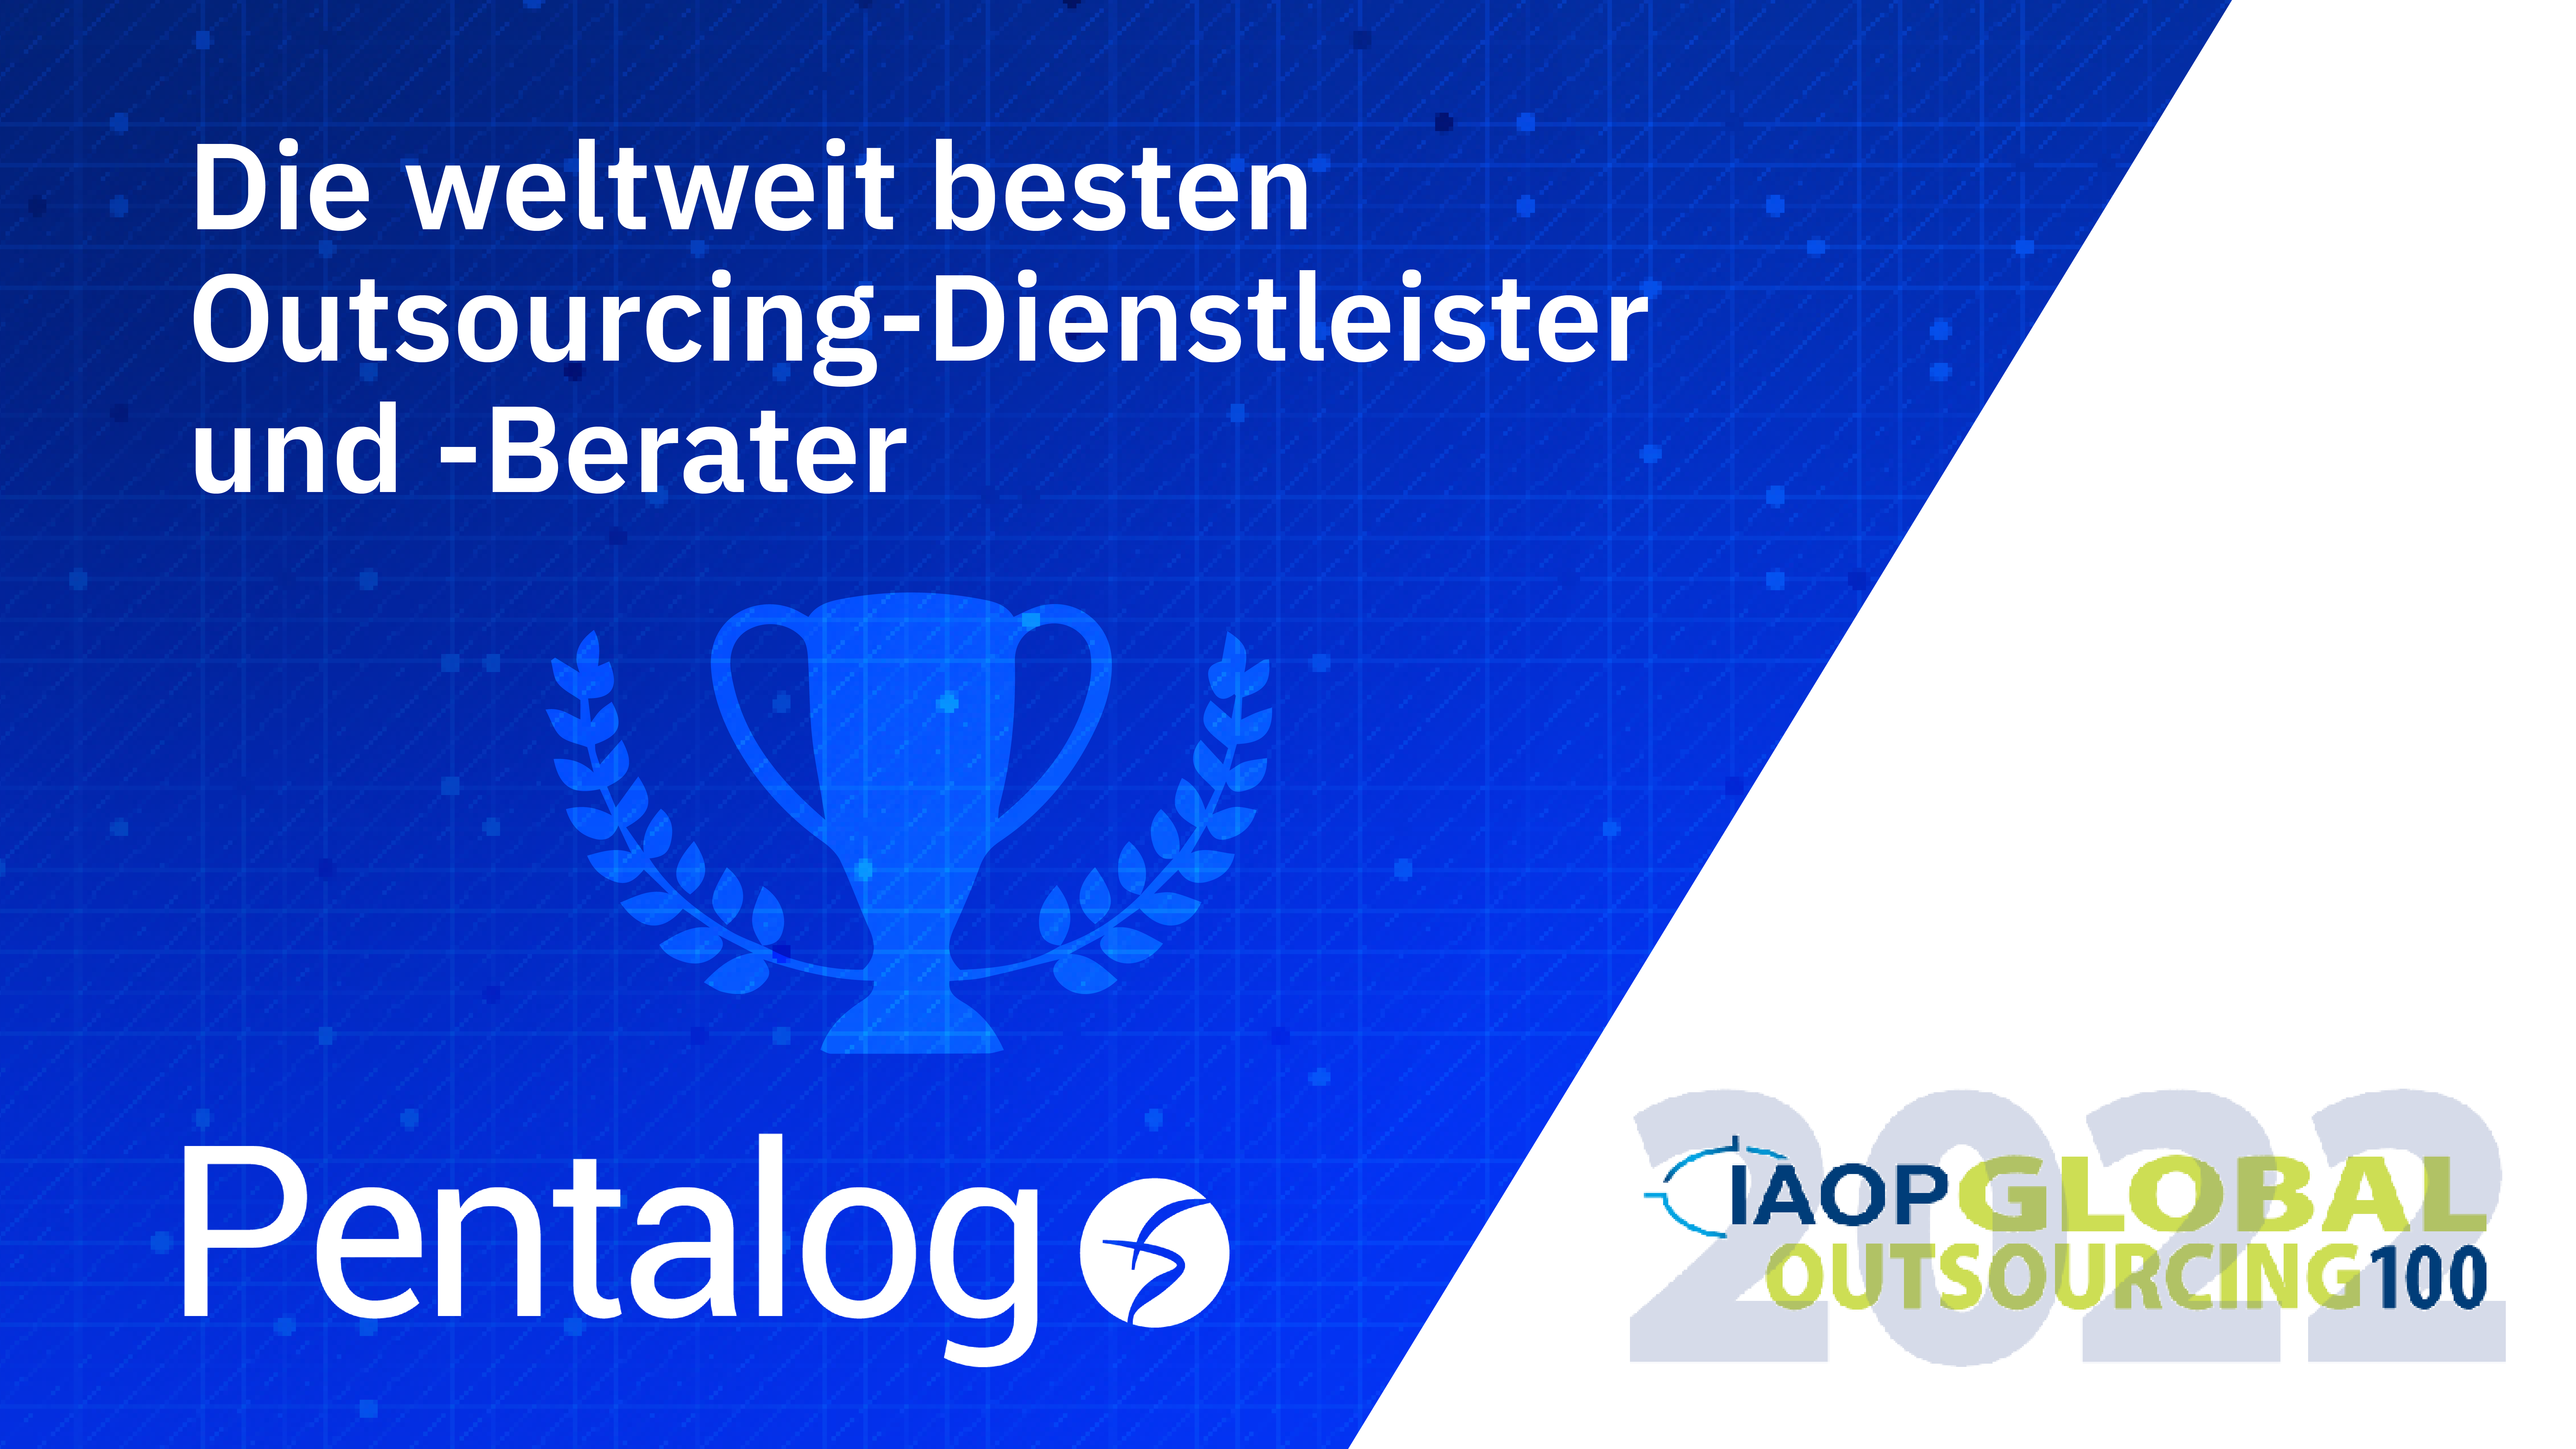 Pentalog unter den weltweit Top 100 IT-Outsourcing-Partnern, mit Bestnoten für Kunden-Fokus